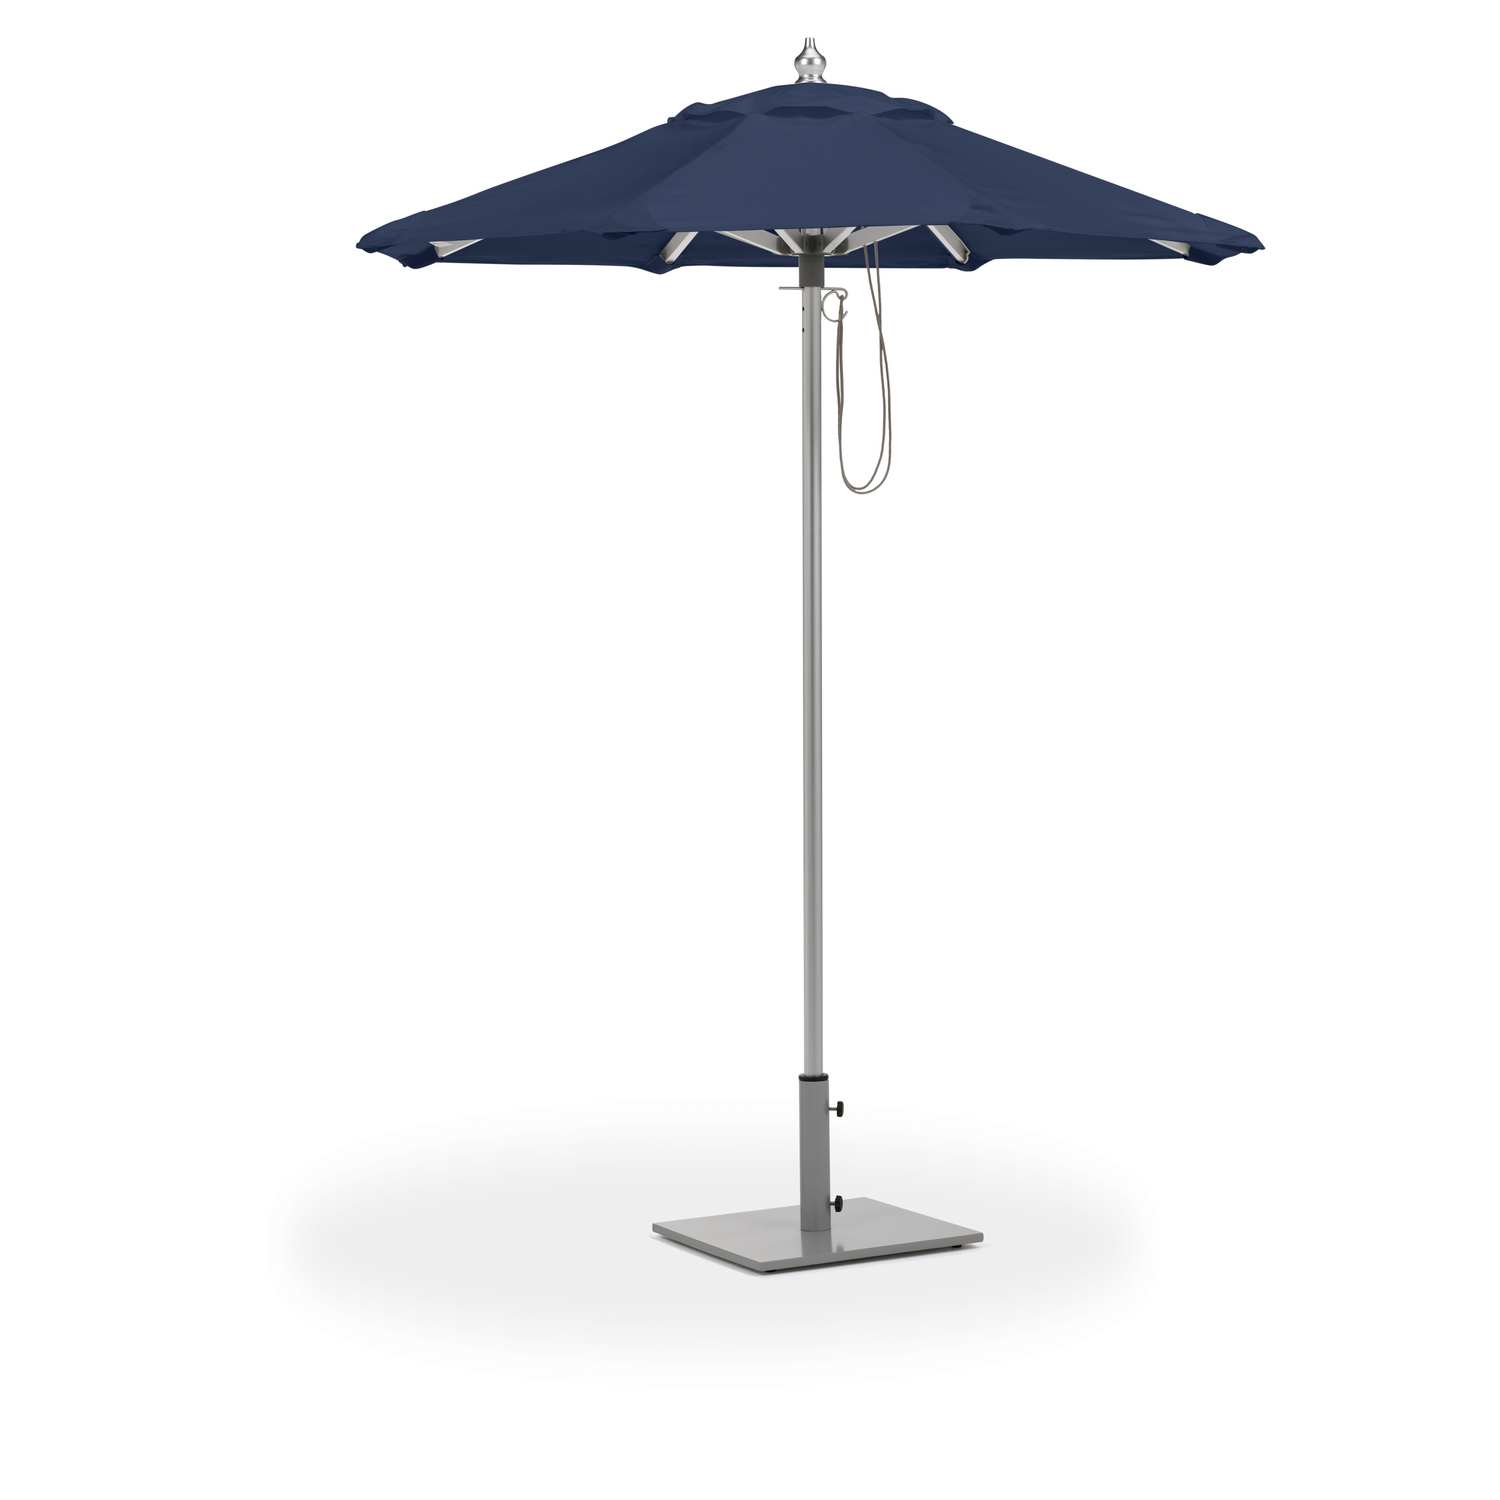 Patio Umbrellas & Awnings Category